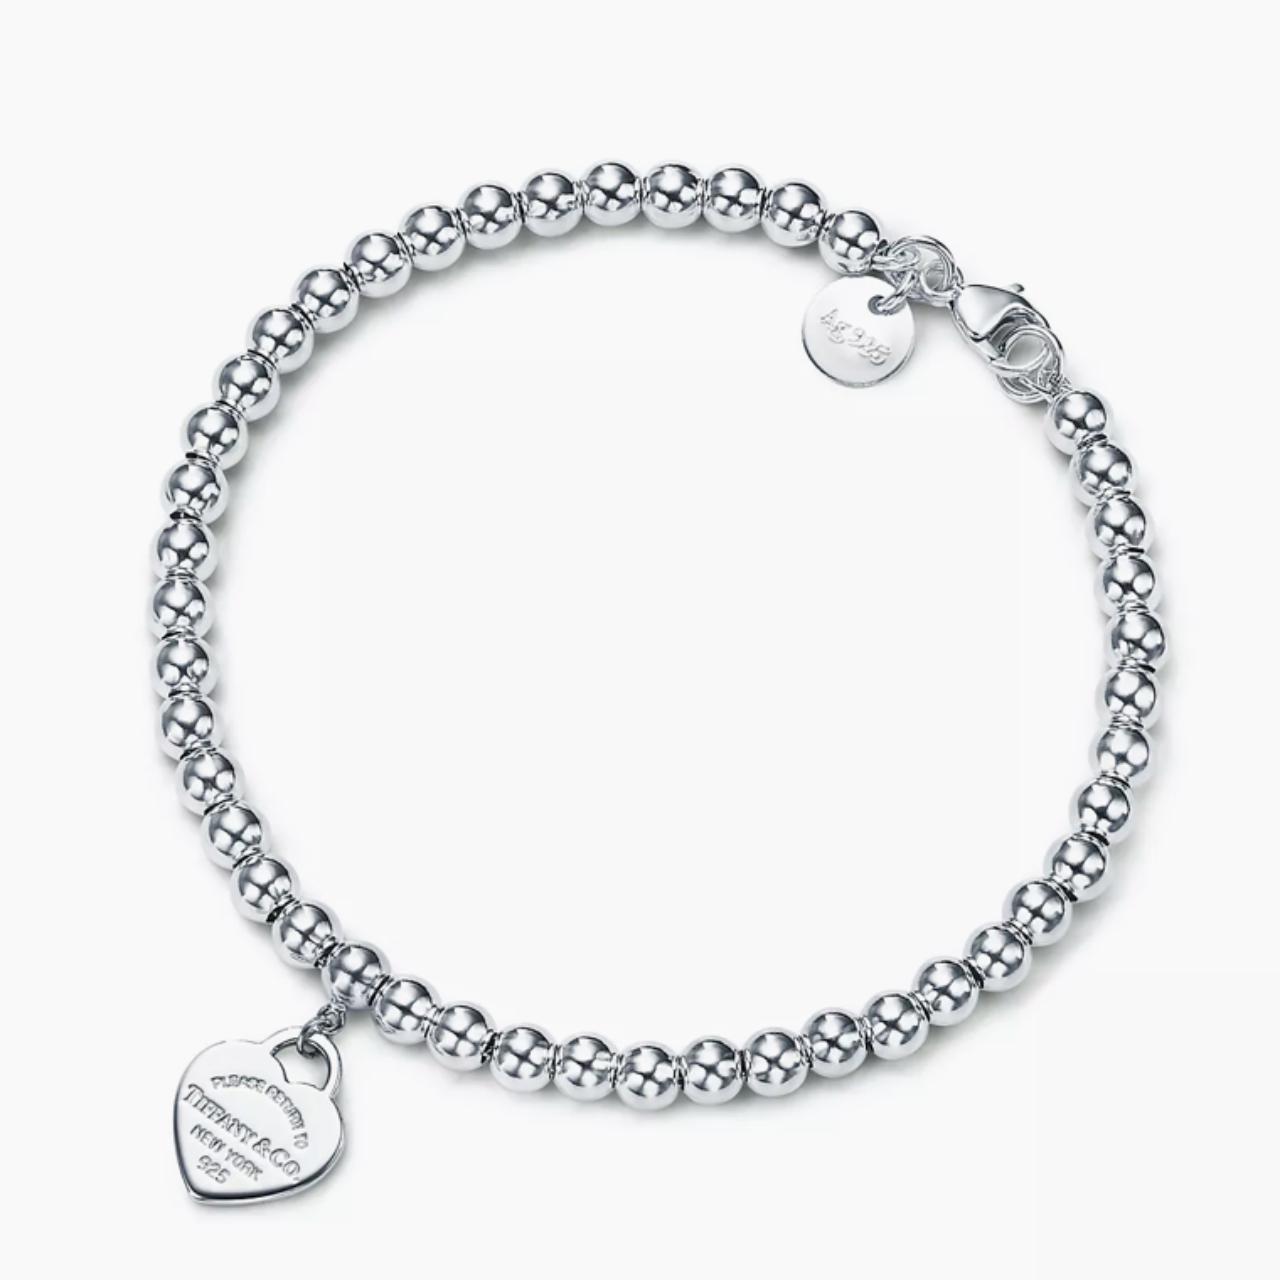 Genuine Tiffany & Co. Silver Bracelet (RRP 420) - Depop